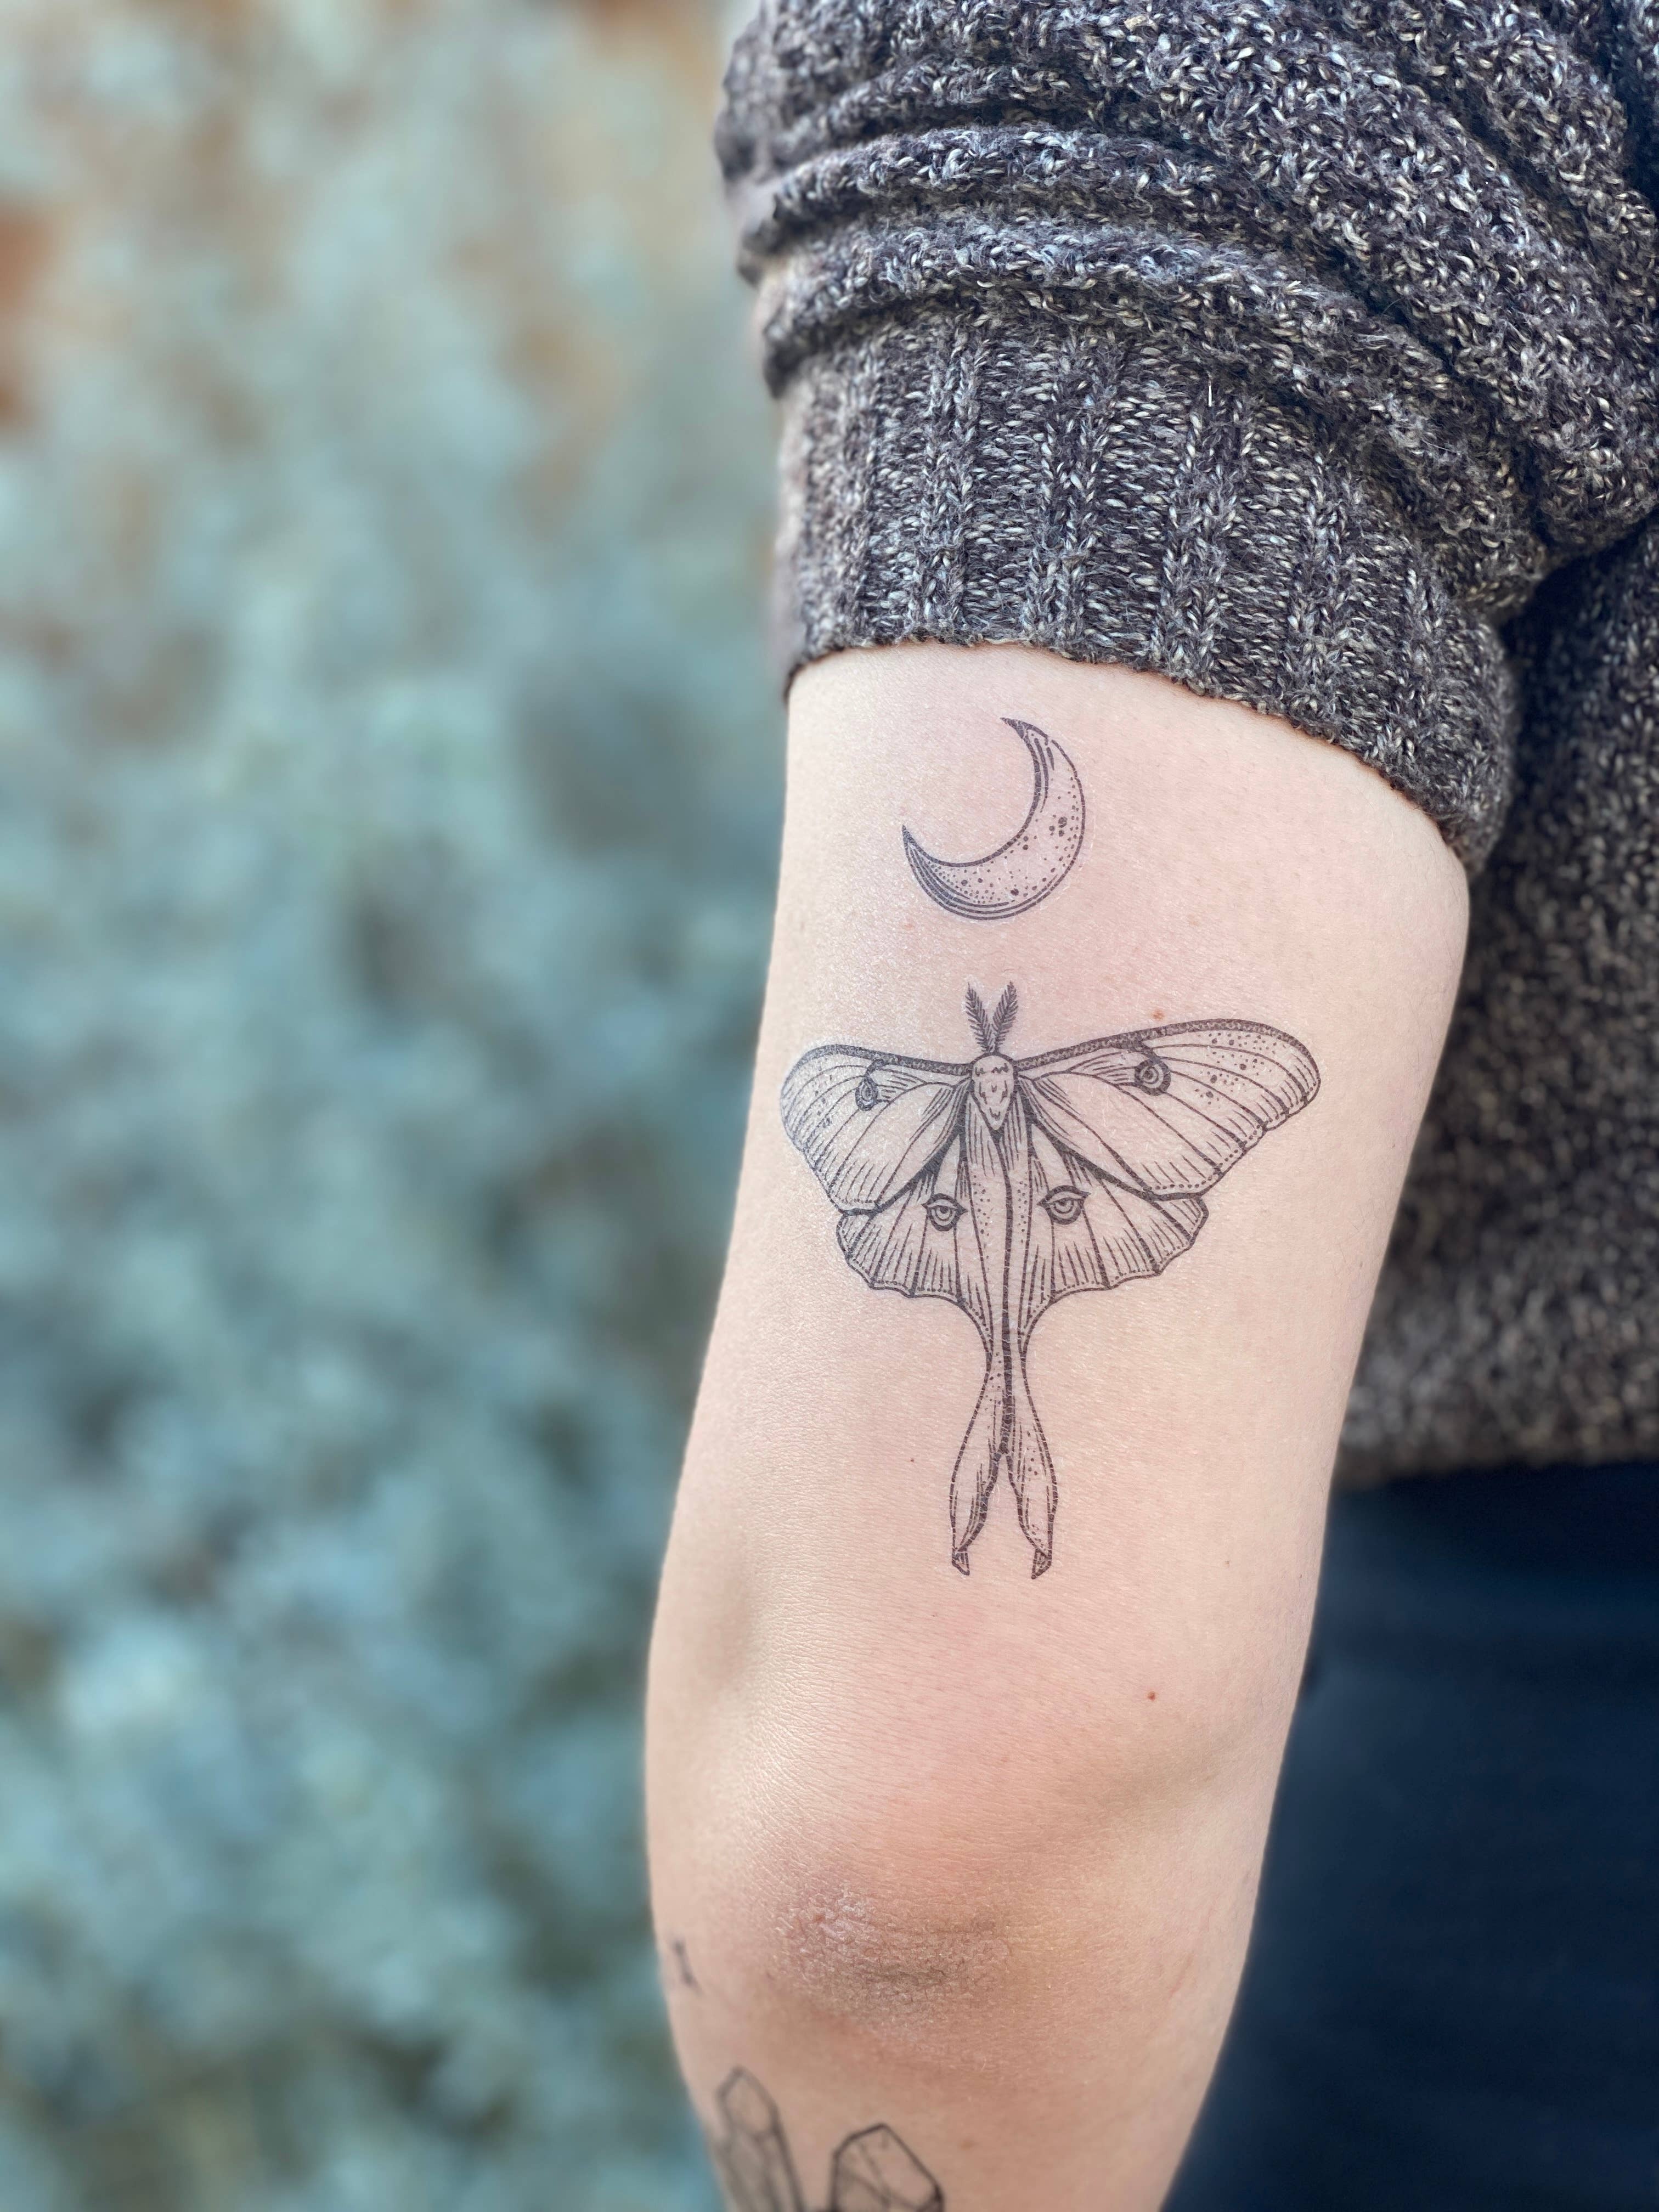 Luna moth tattoo Moth tattoo design Moth tattoo